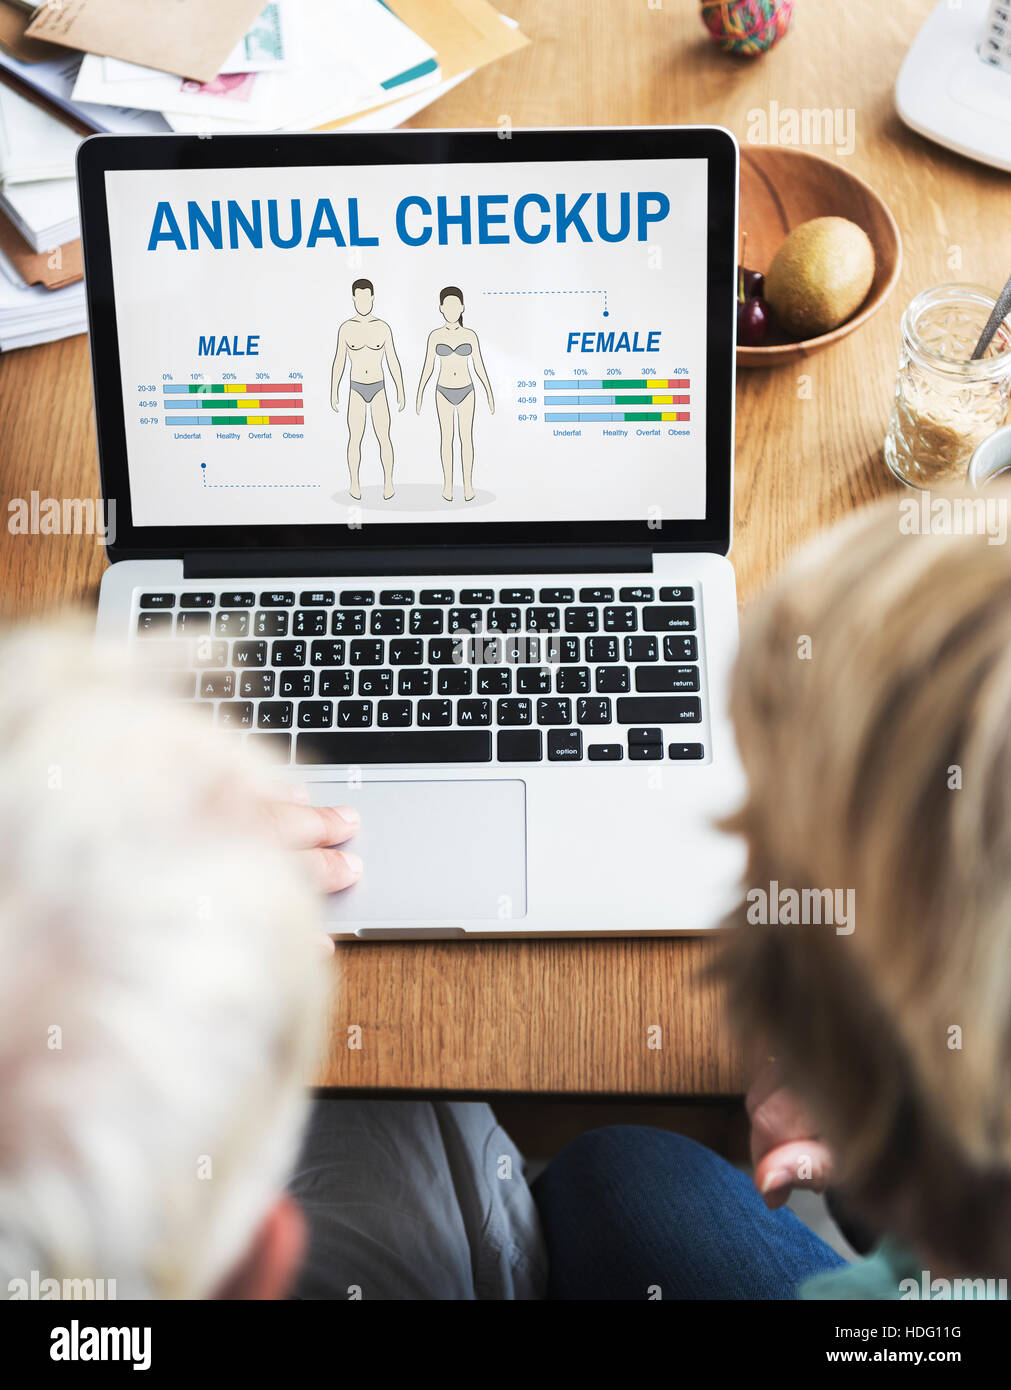 Health Check jährlichen Checkup Körper Biologie-Konzept Stockfoto